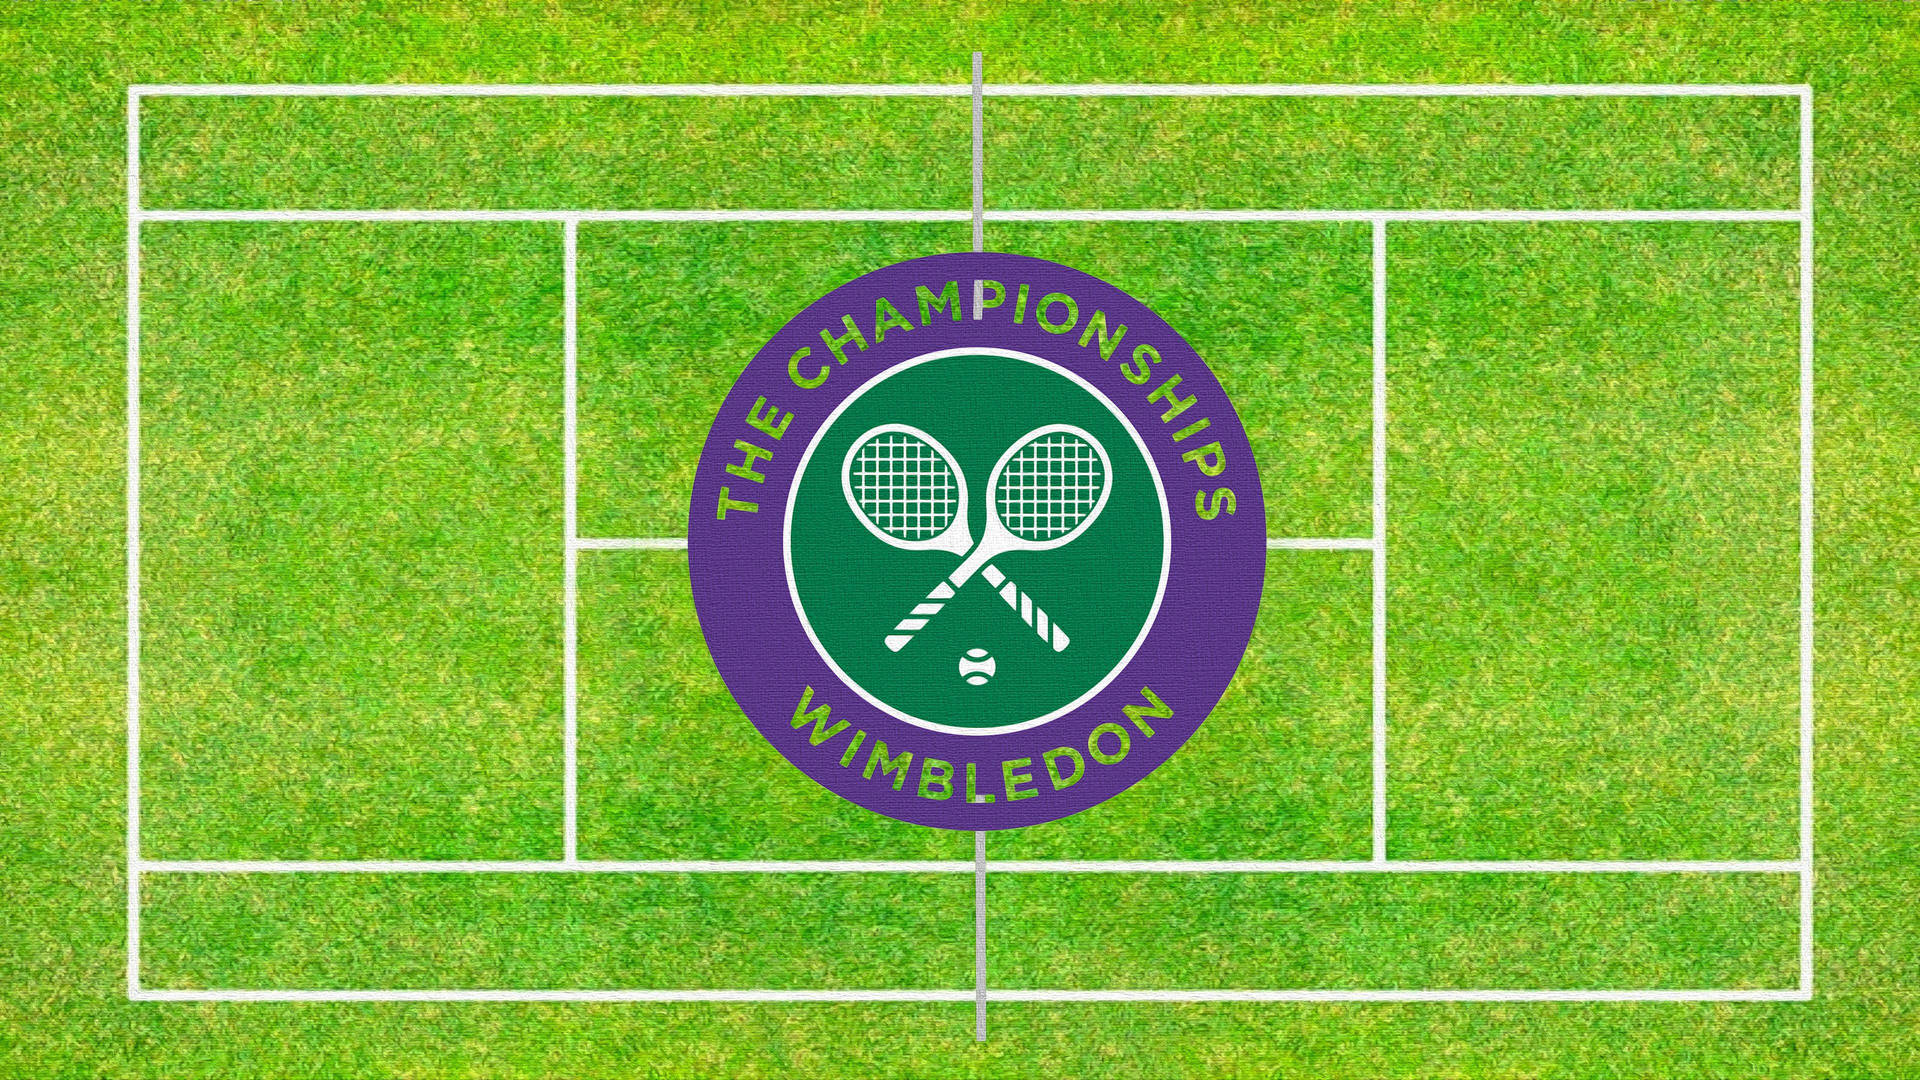 Logotipodel Campeonato De Wimbledon. Fondo de pantalla